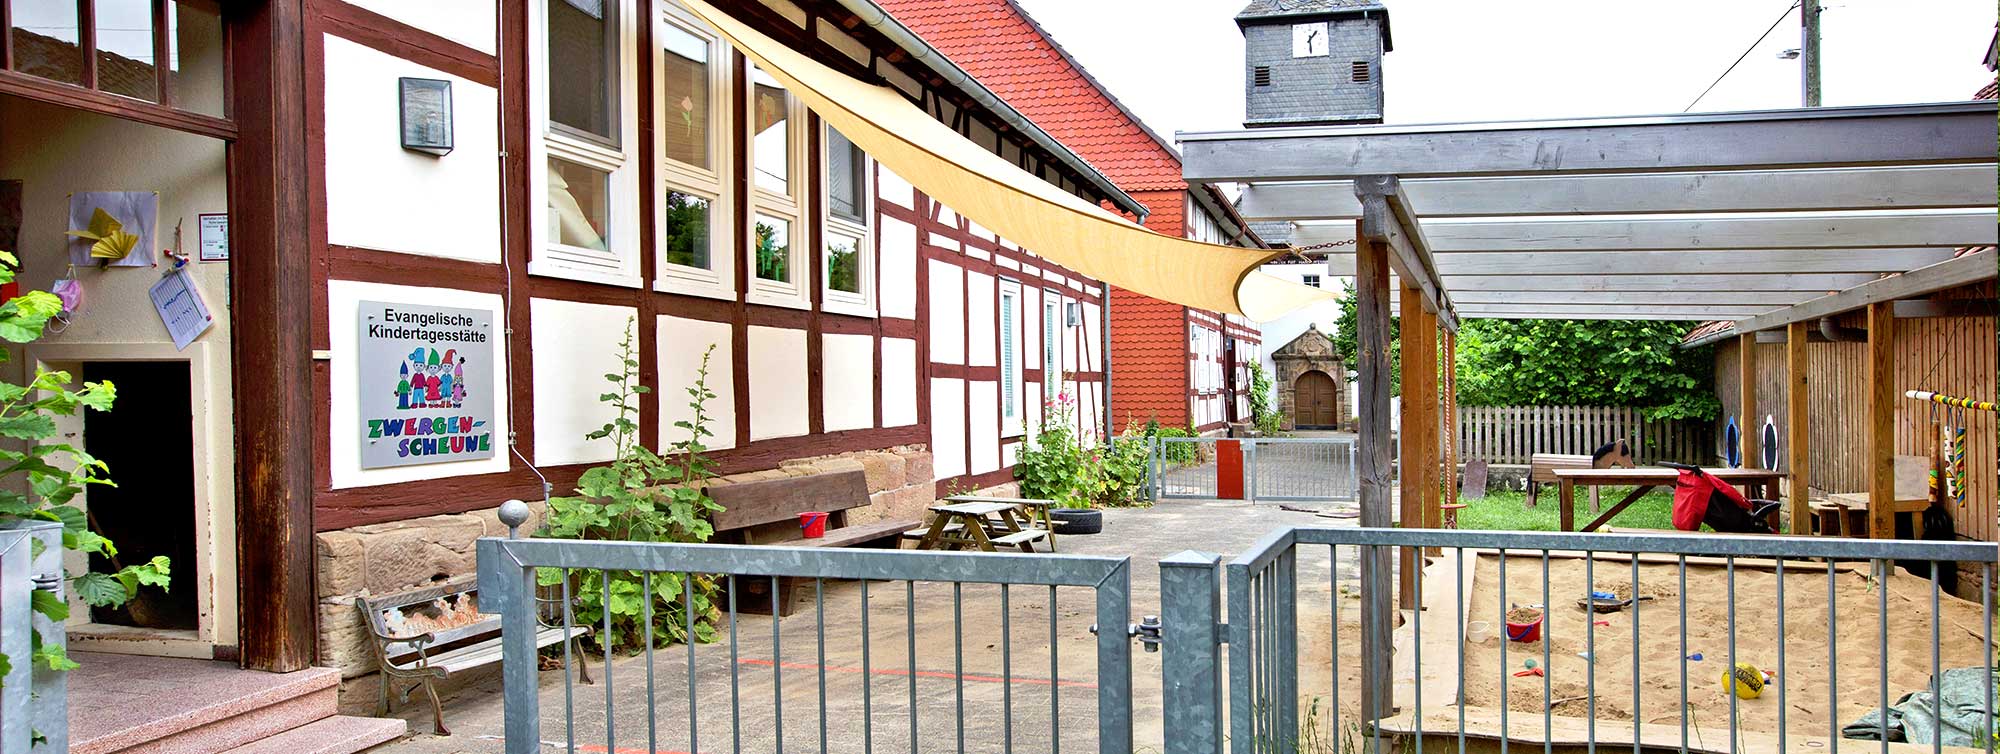 Aussenansicht der Ev. Kindertagesstätte Bad Arolsen - Schmillinghausen